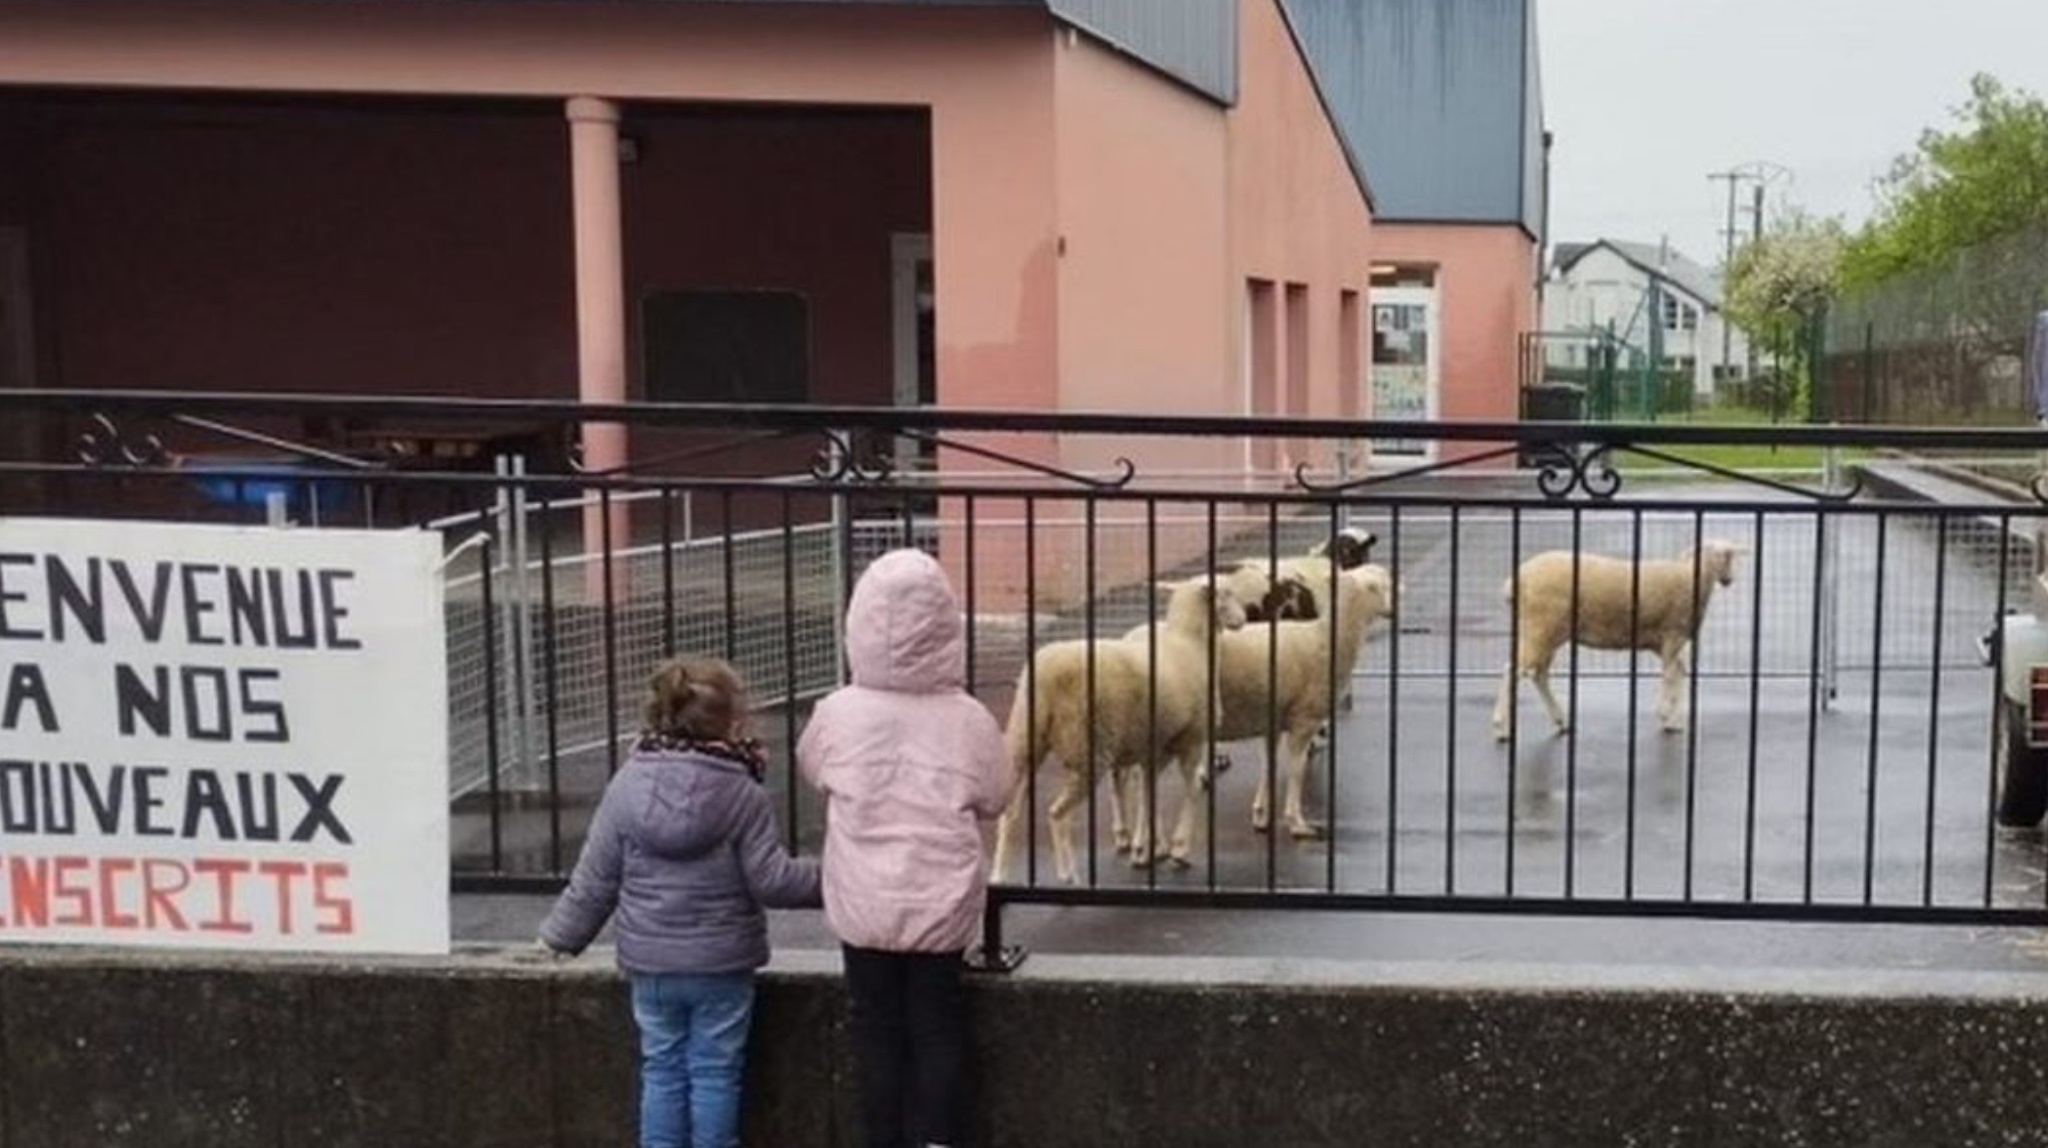 4 dele regjistrohen në shkollë për të shmangur mbylljen e klasës!